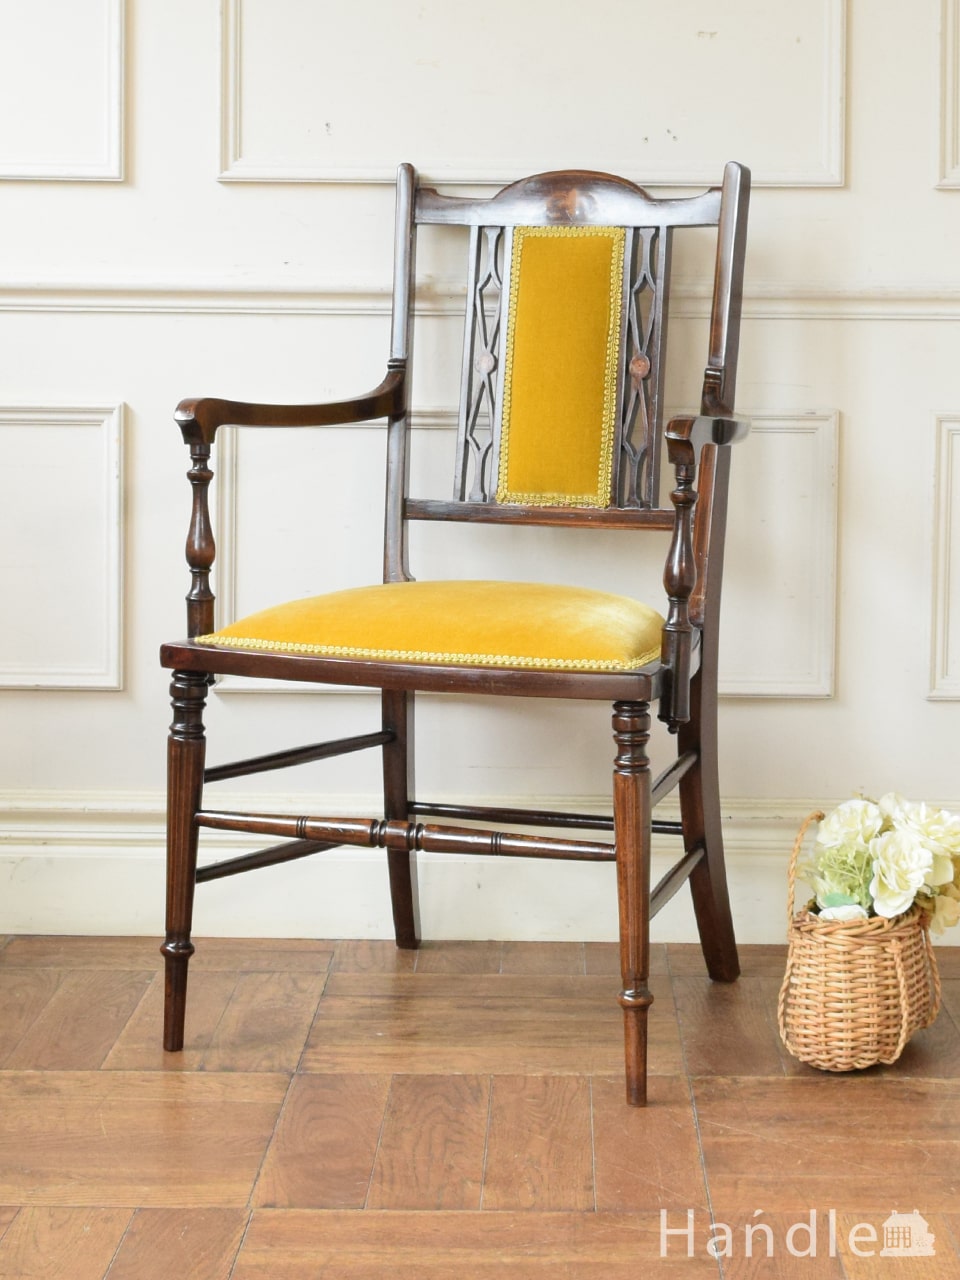 アンティークのアーム付きの椅子、挽き物や透かし彫りの装飾が美しいサロンチェア (z-085-c)